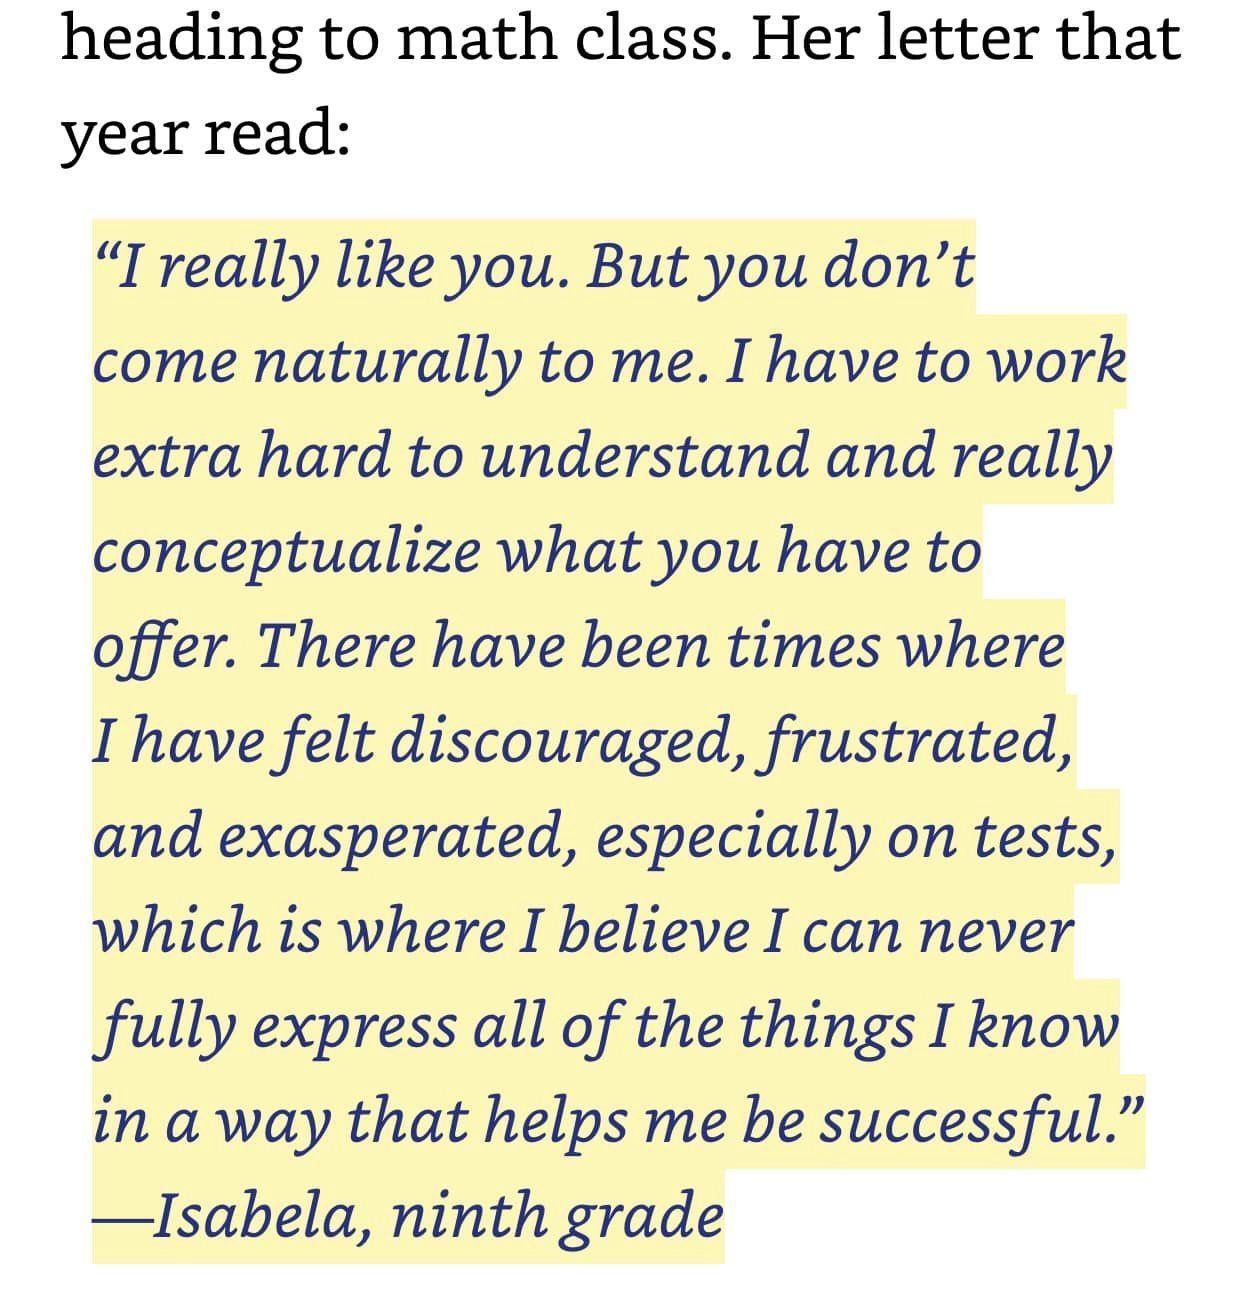 書中一個學生 Isabela 在九年級時寫下給 Dear Math 的信，Isabela 面臨考試有嚴重的焦慮症。Amber Chang 提供